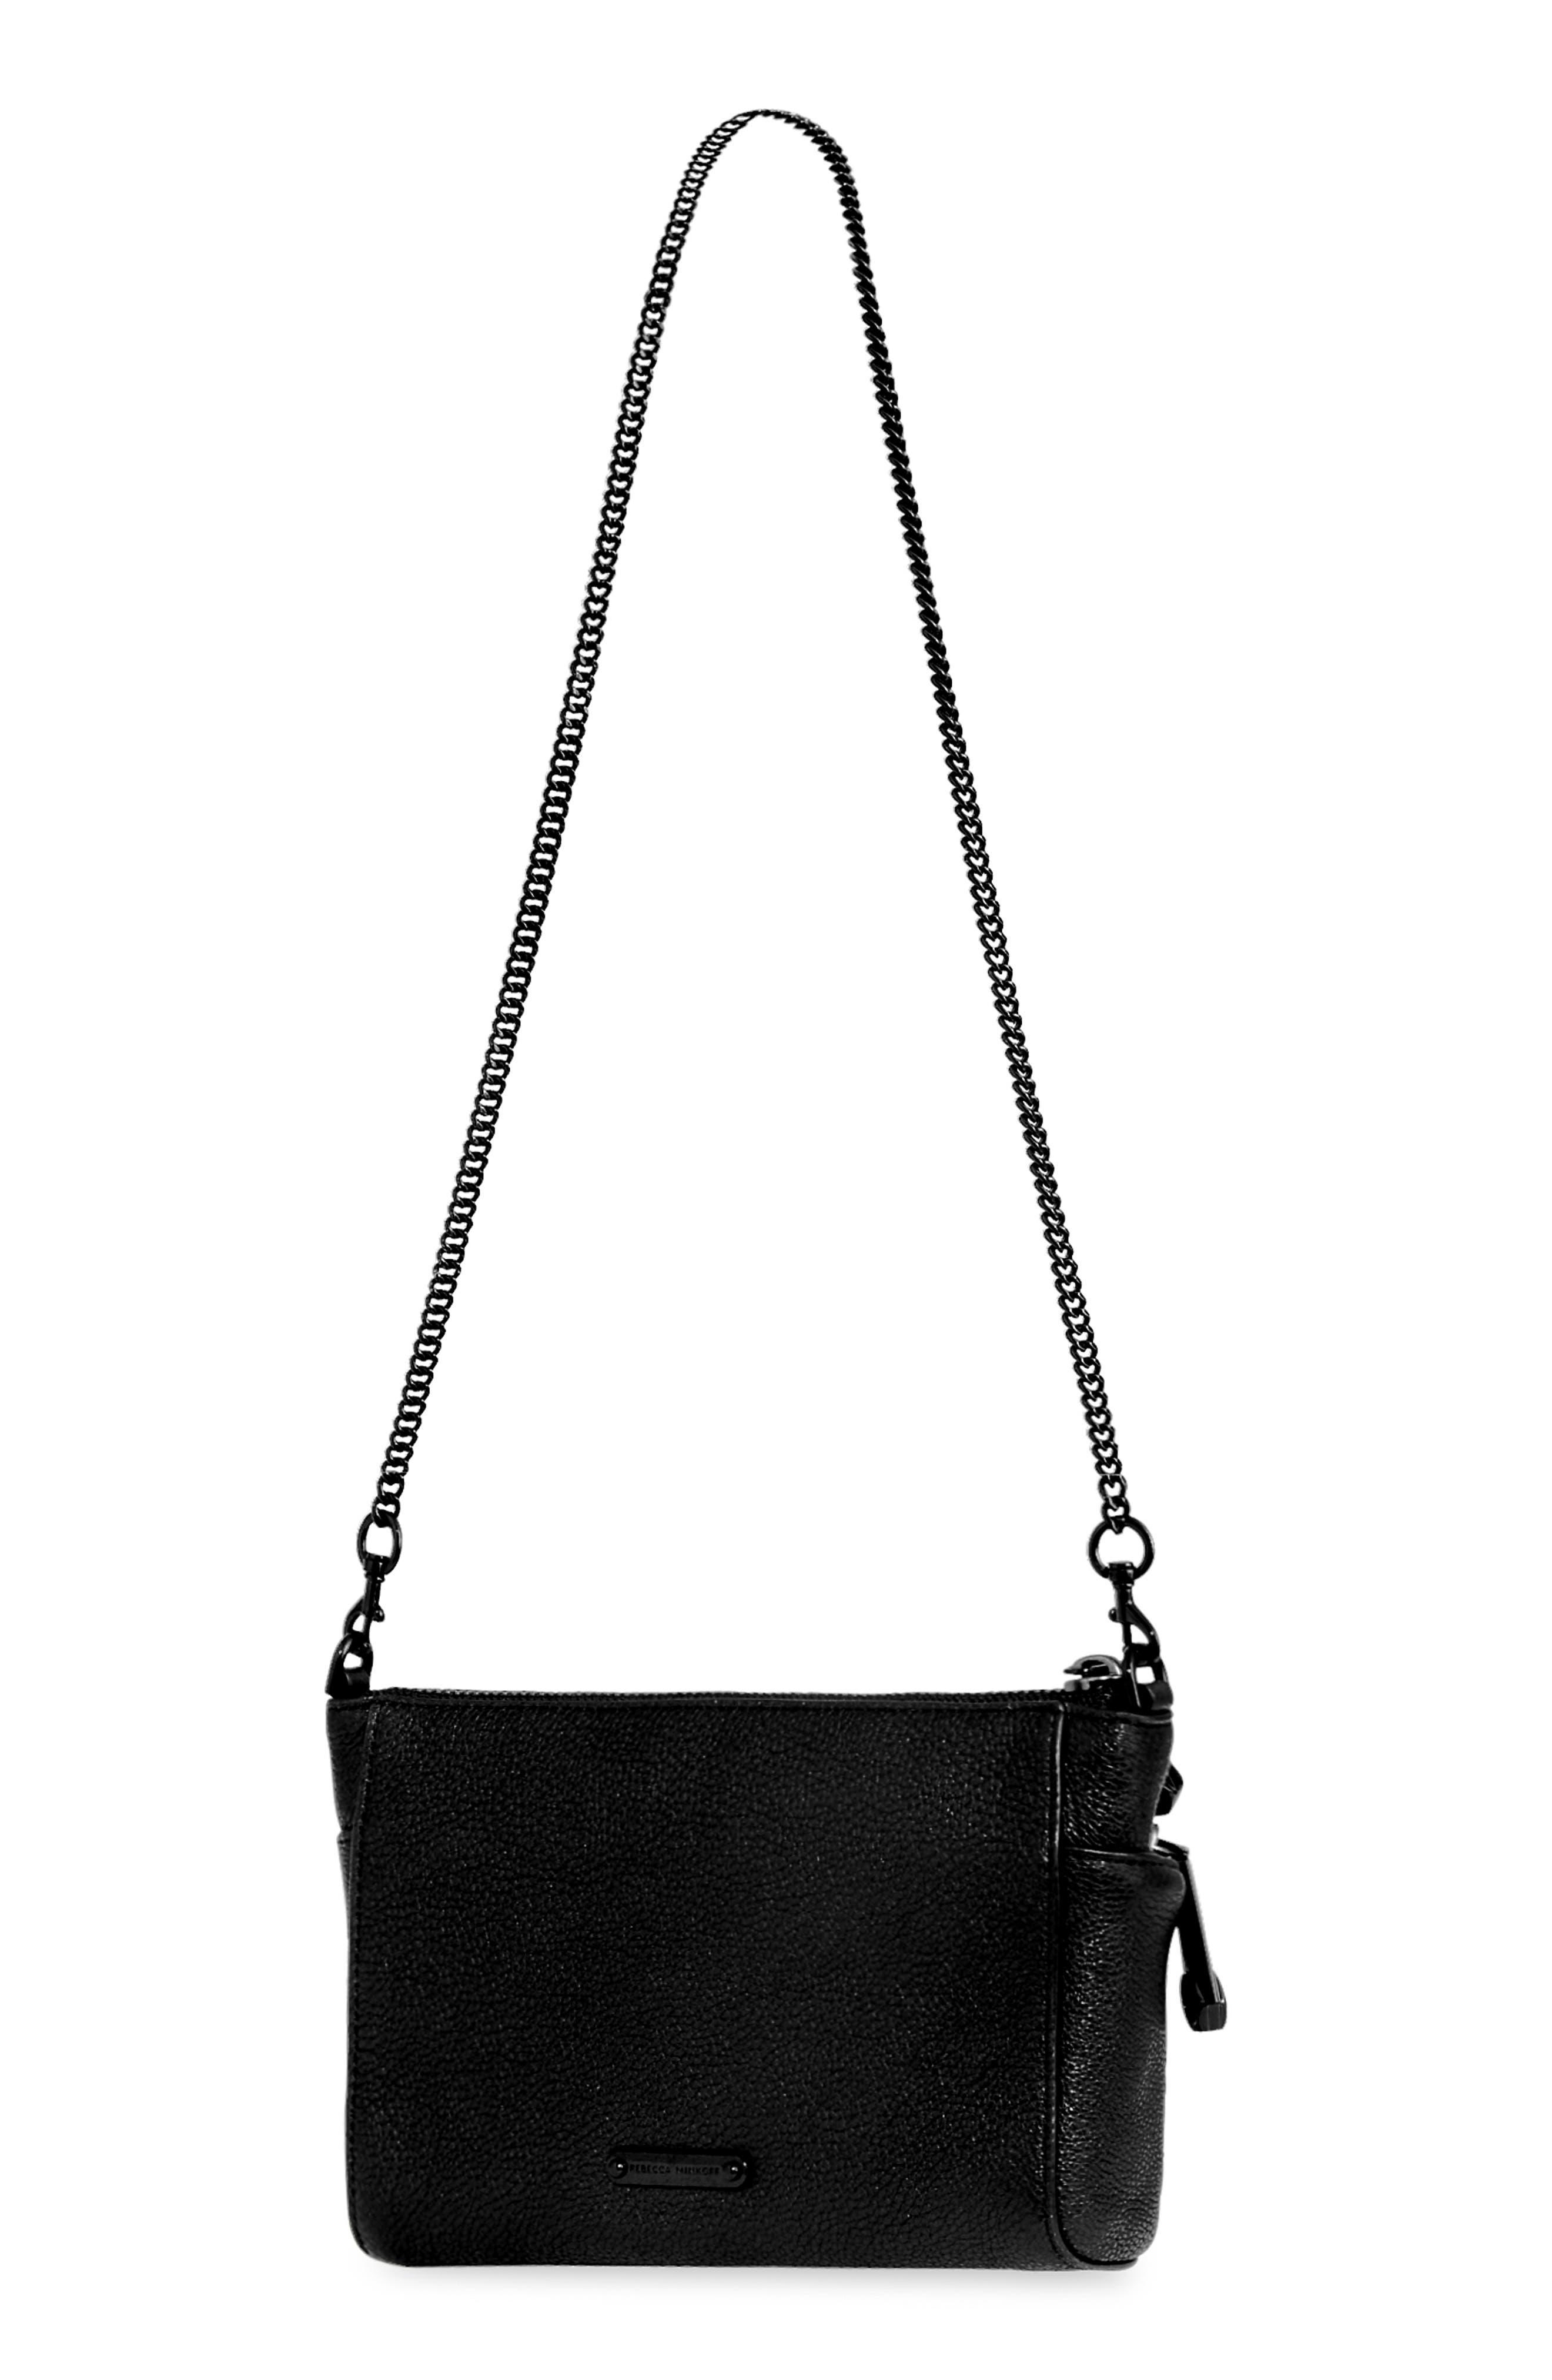 Rebecca Minkoff Pink Leather Crossbody Bag Purse Chain Strap Clip